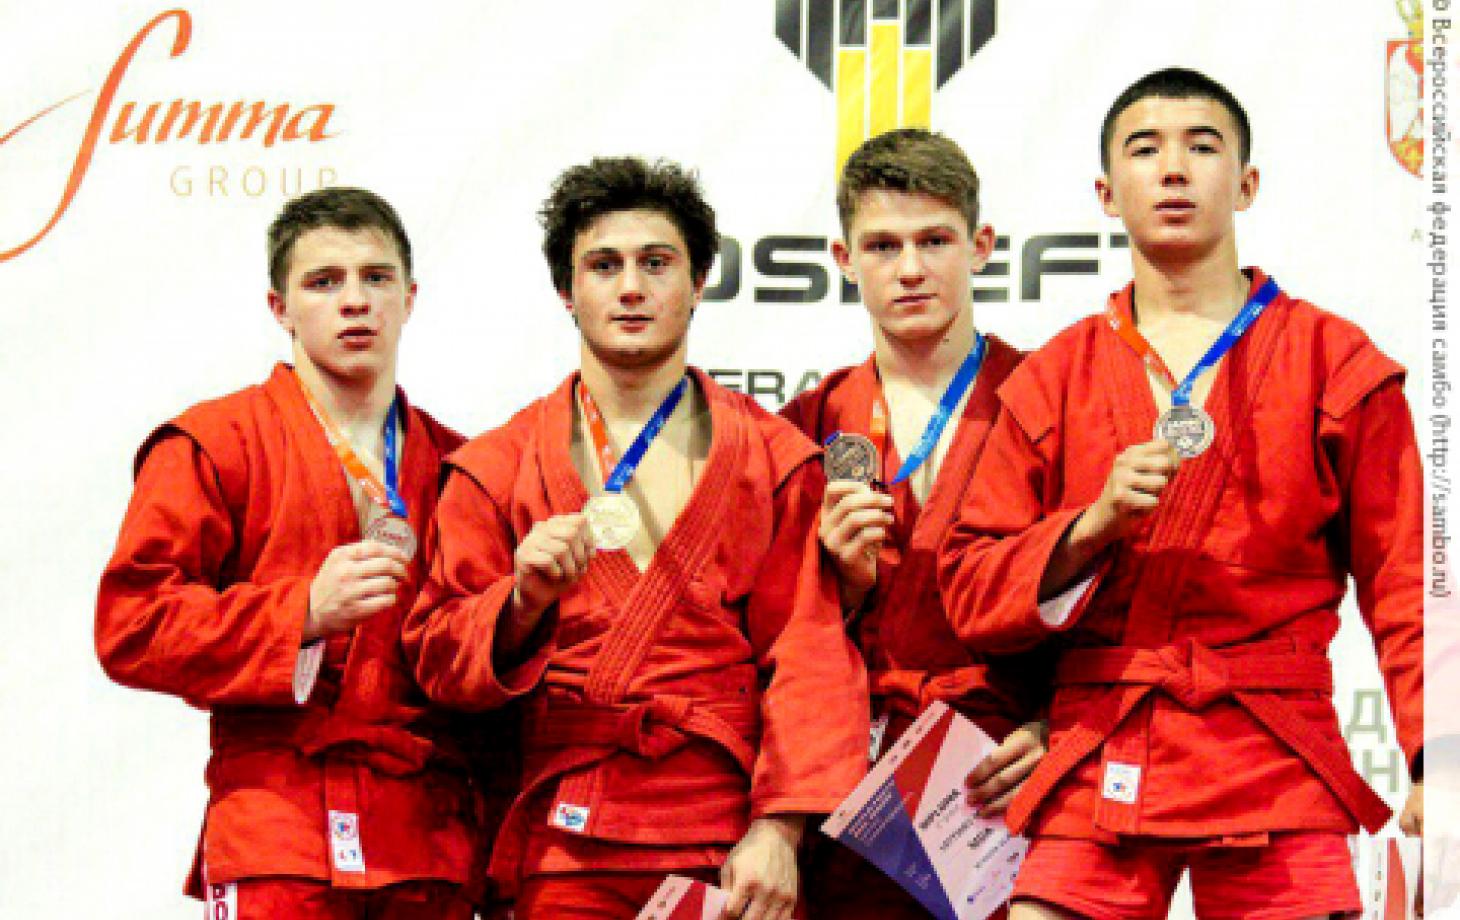 Марк Латышев (второй справа) с медалью мирового первенства